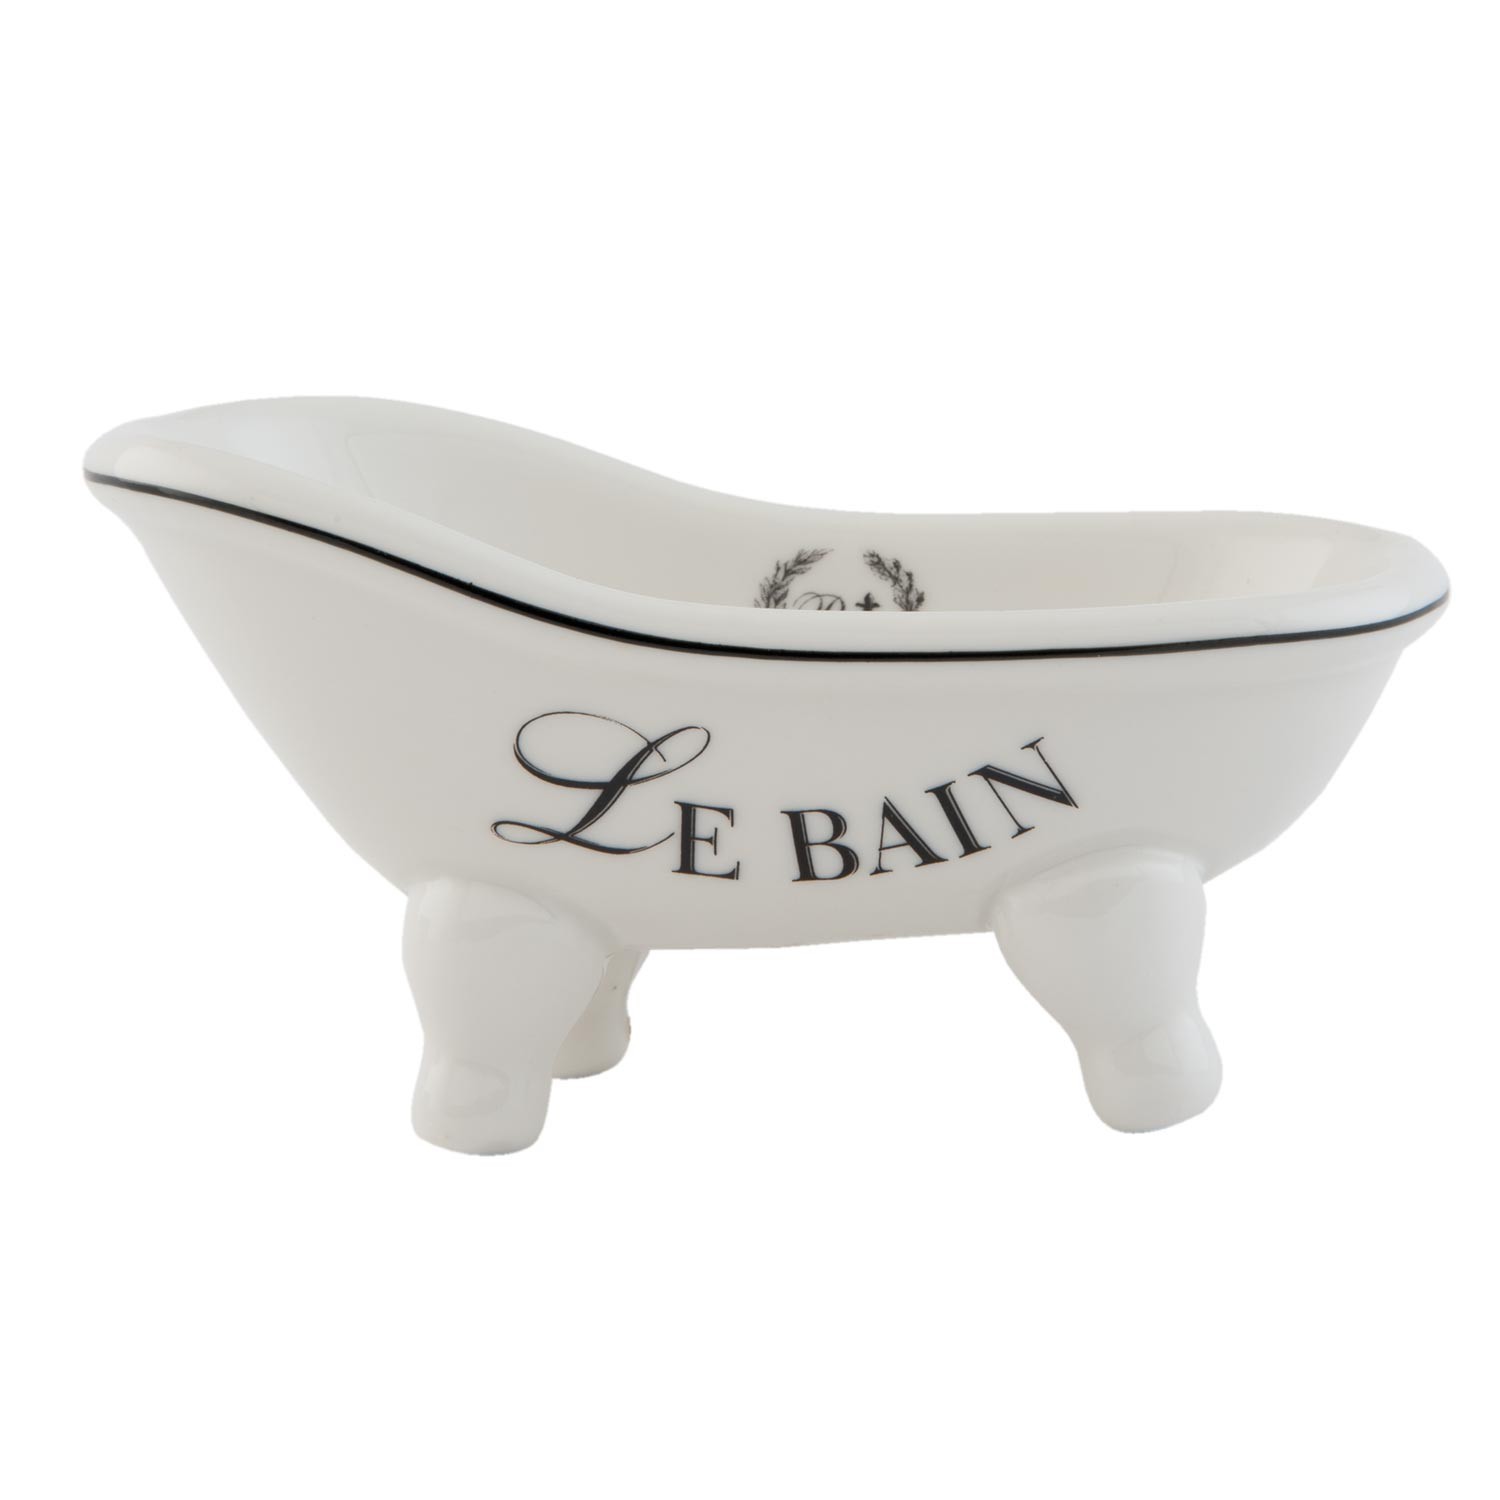 Mýdlenka Le bain 14*7*7 cm Clayre & Eef